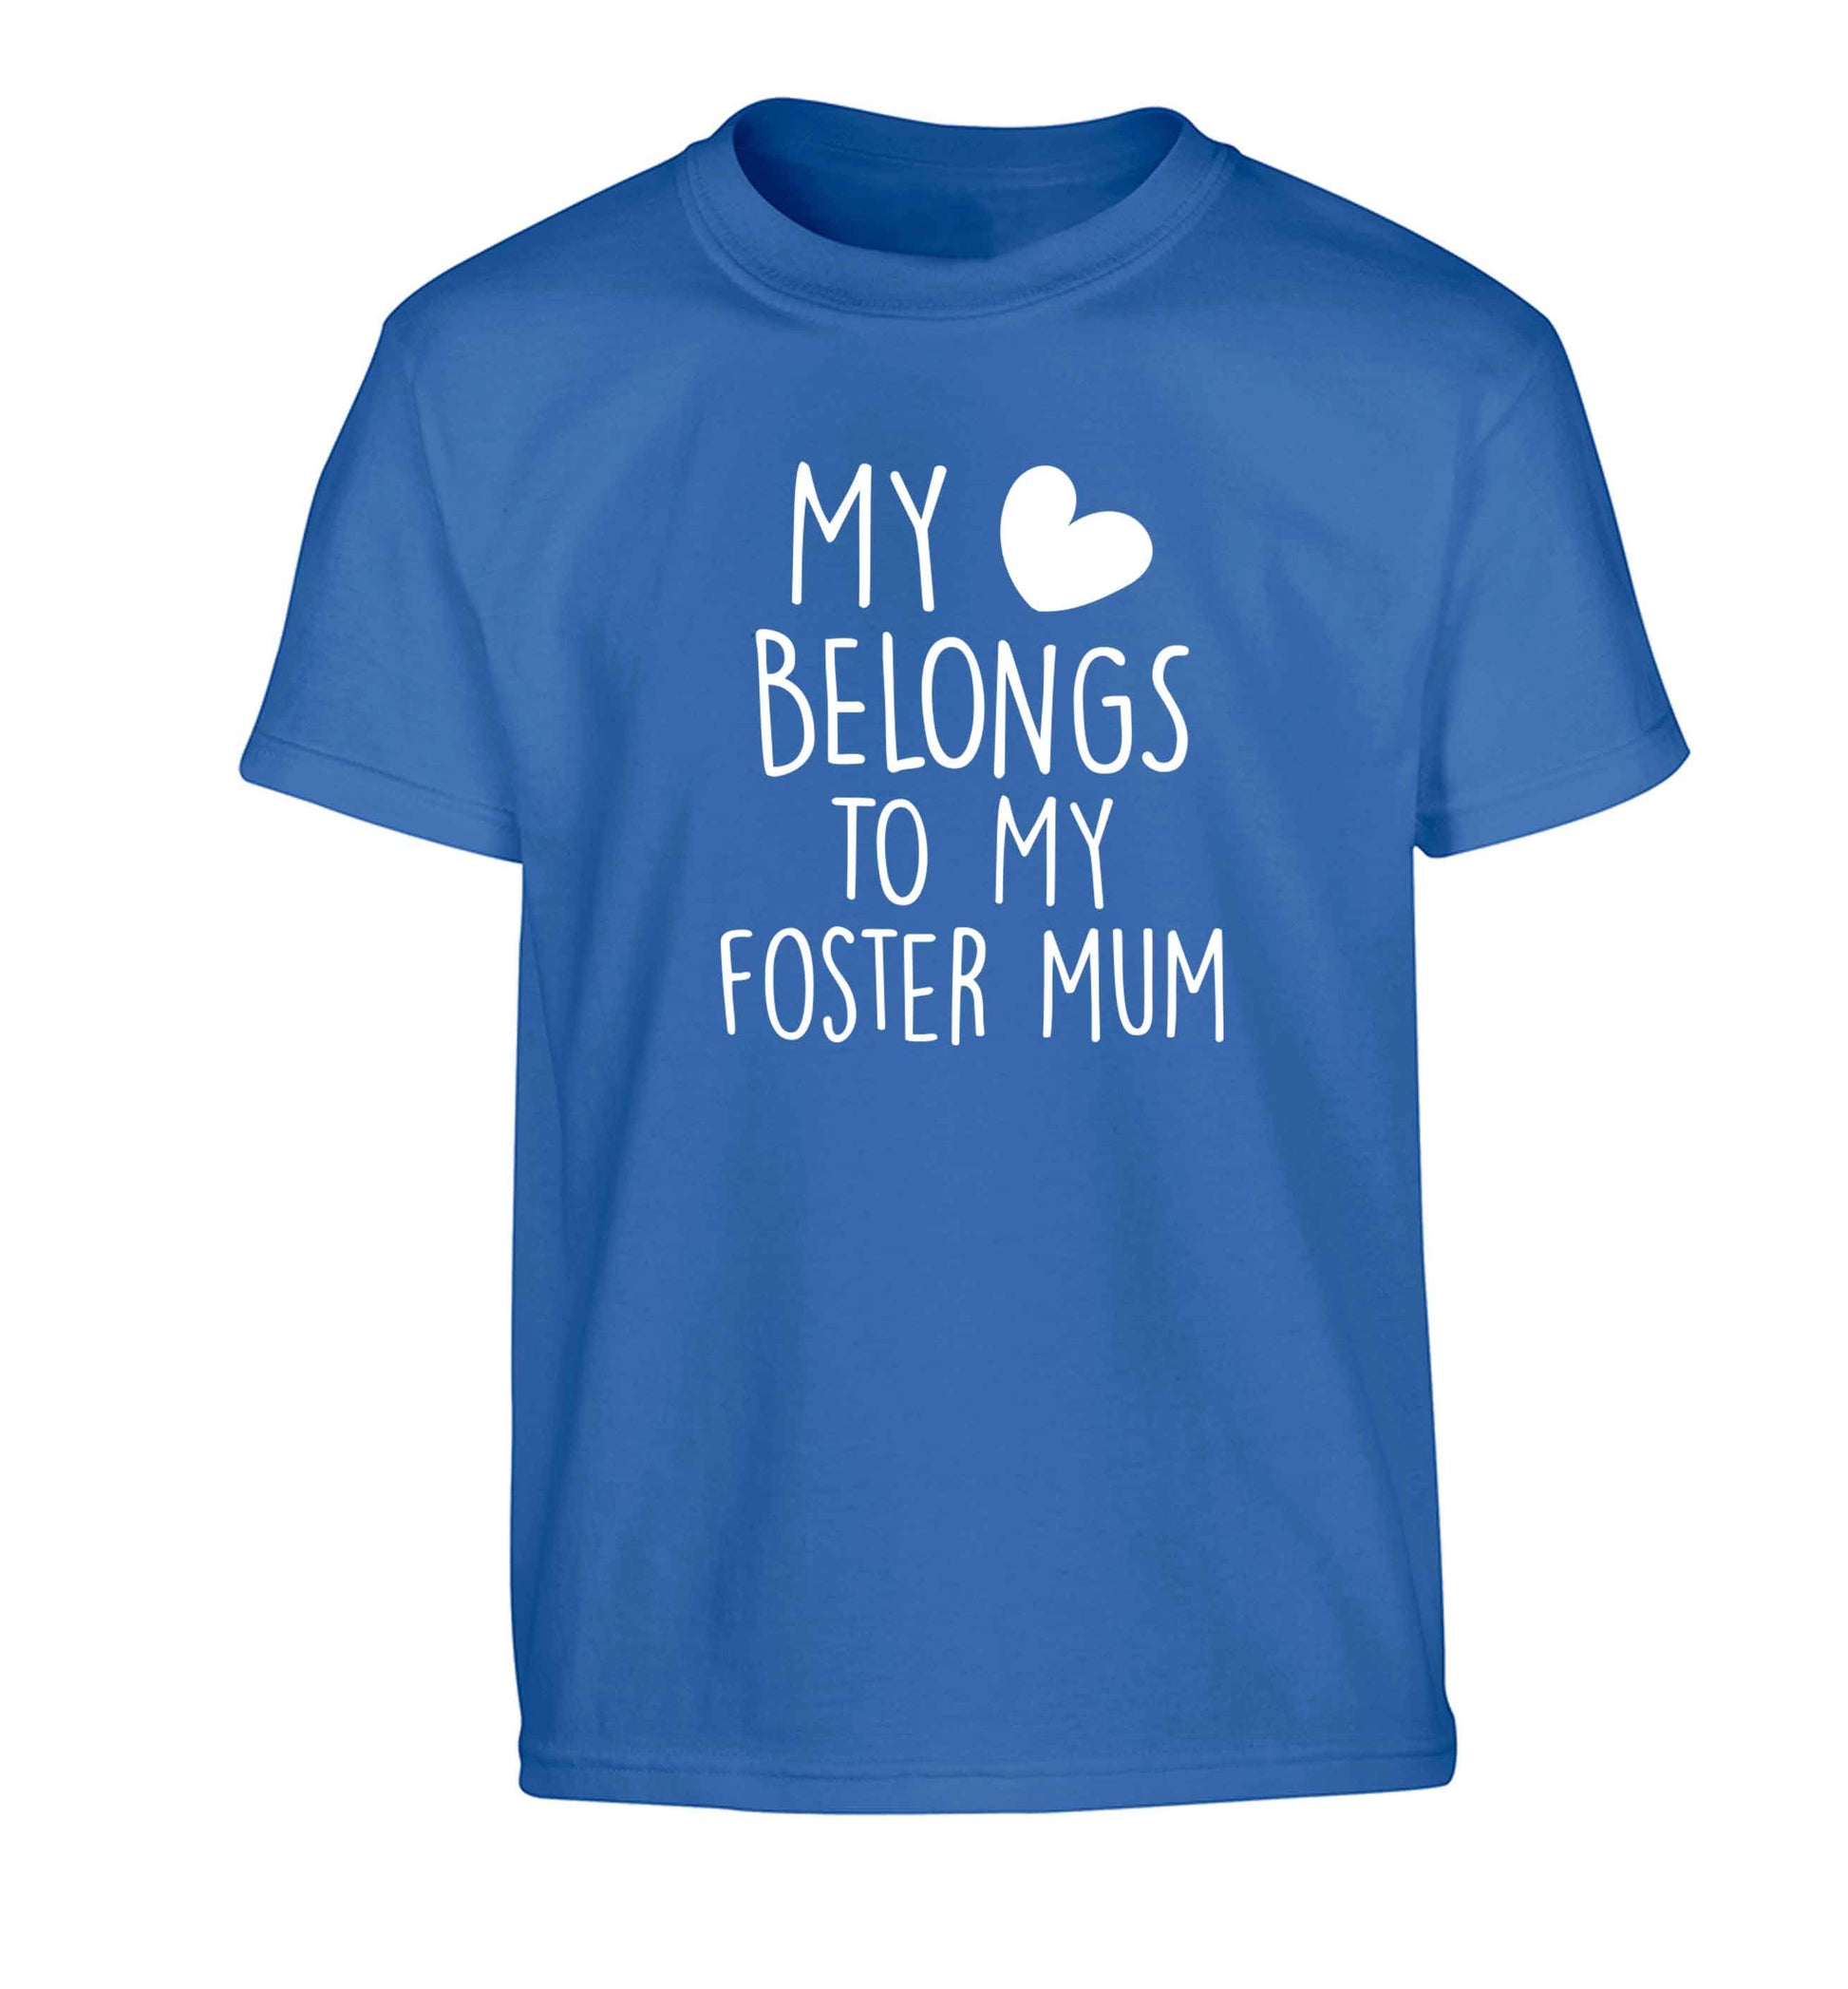 My heart belongs to my foster mum Children's blue Tshirt 12-13 Years